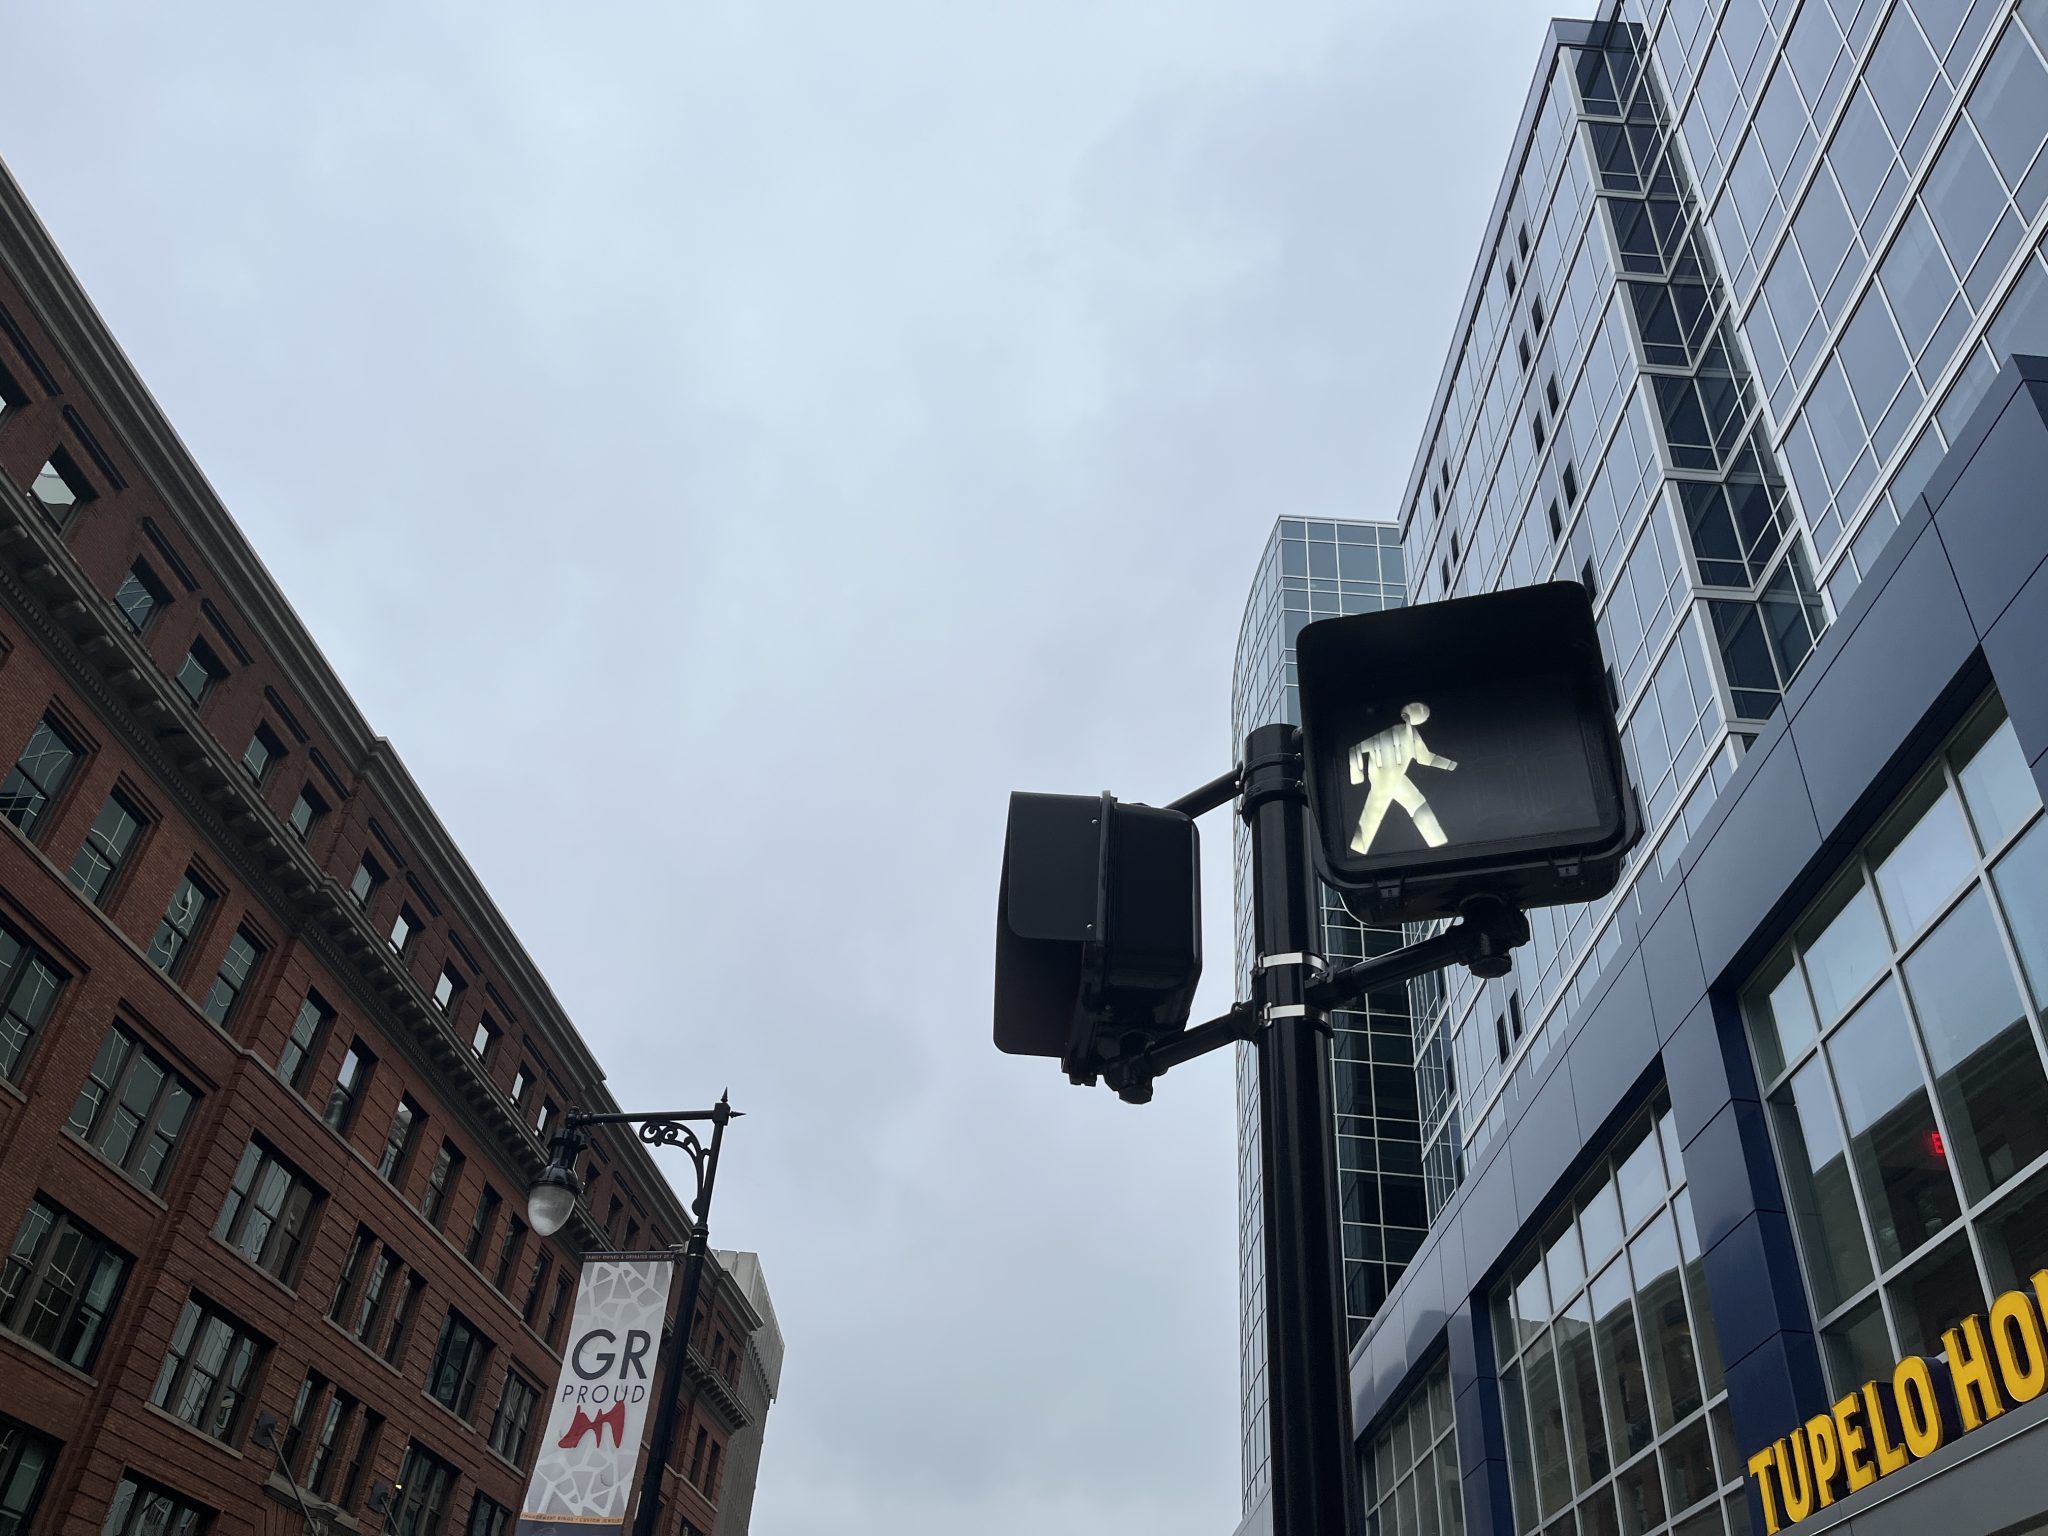 Pedestrian walk signal